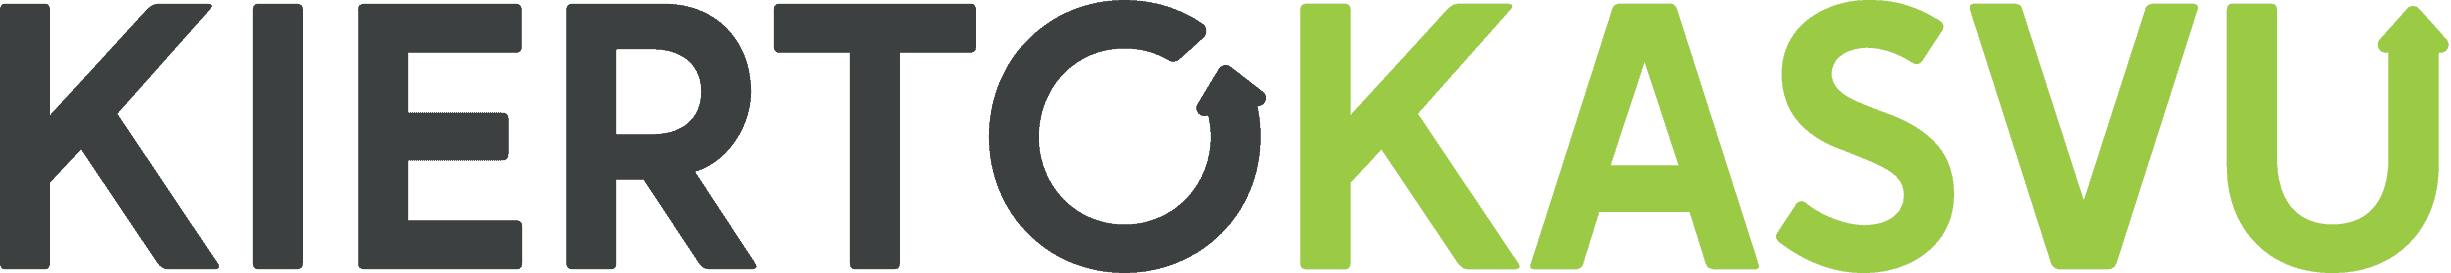 Kiertokasvu logo